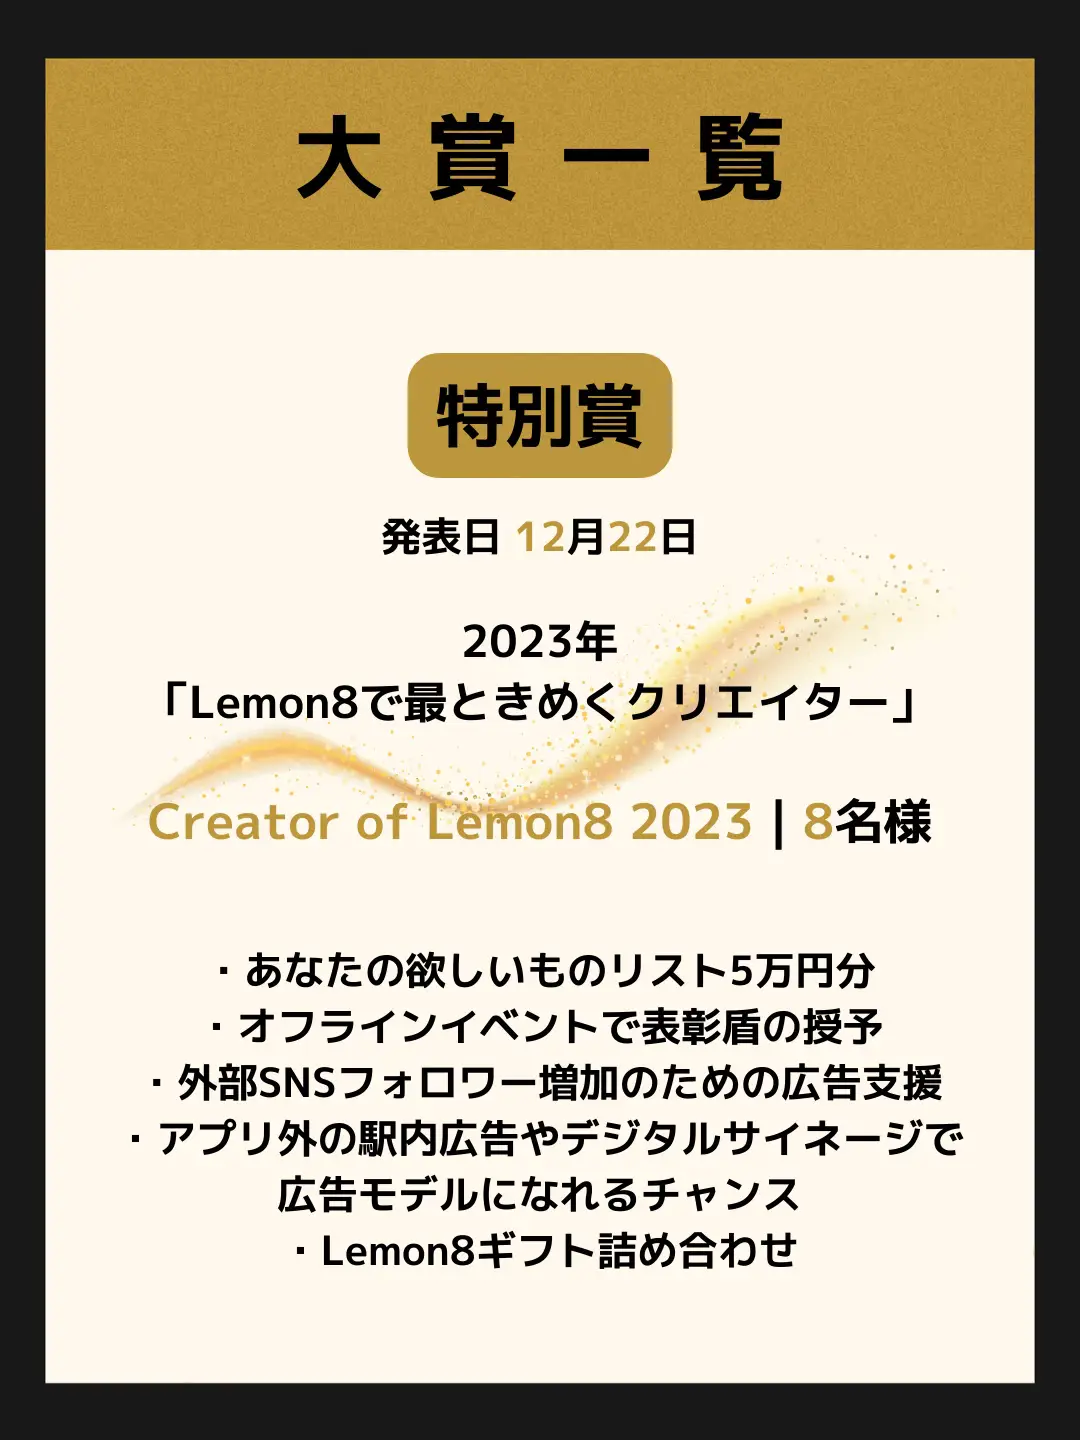 ギフトカードページ - Lemon8検索